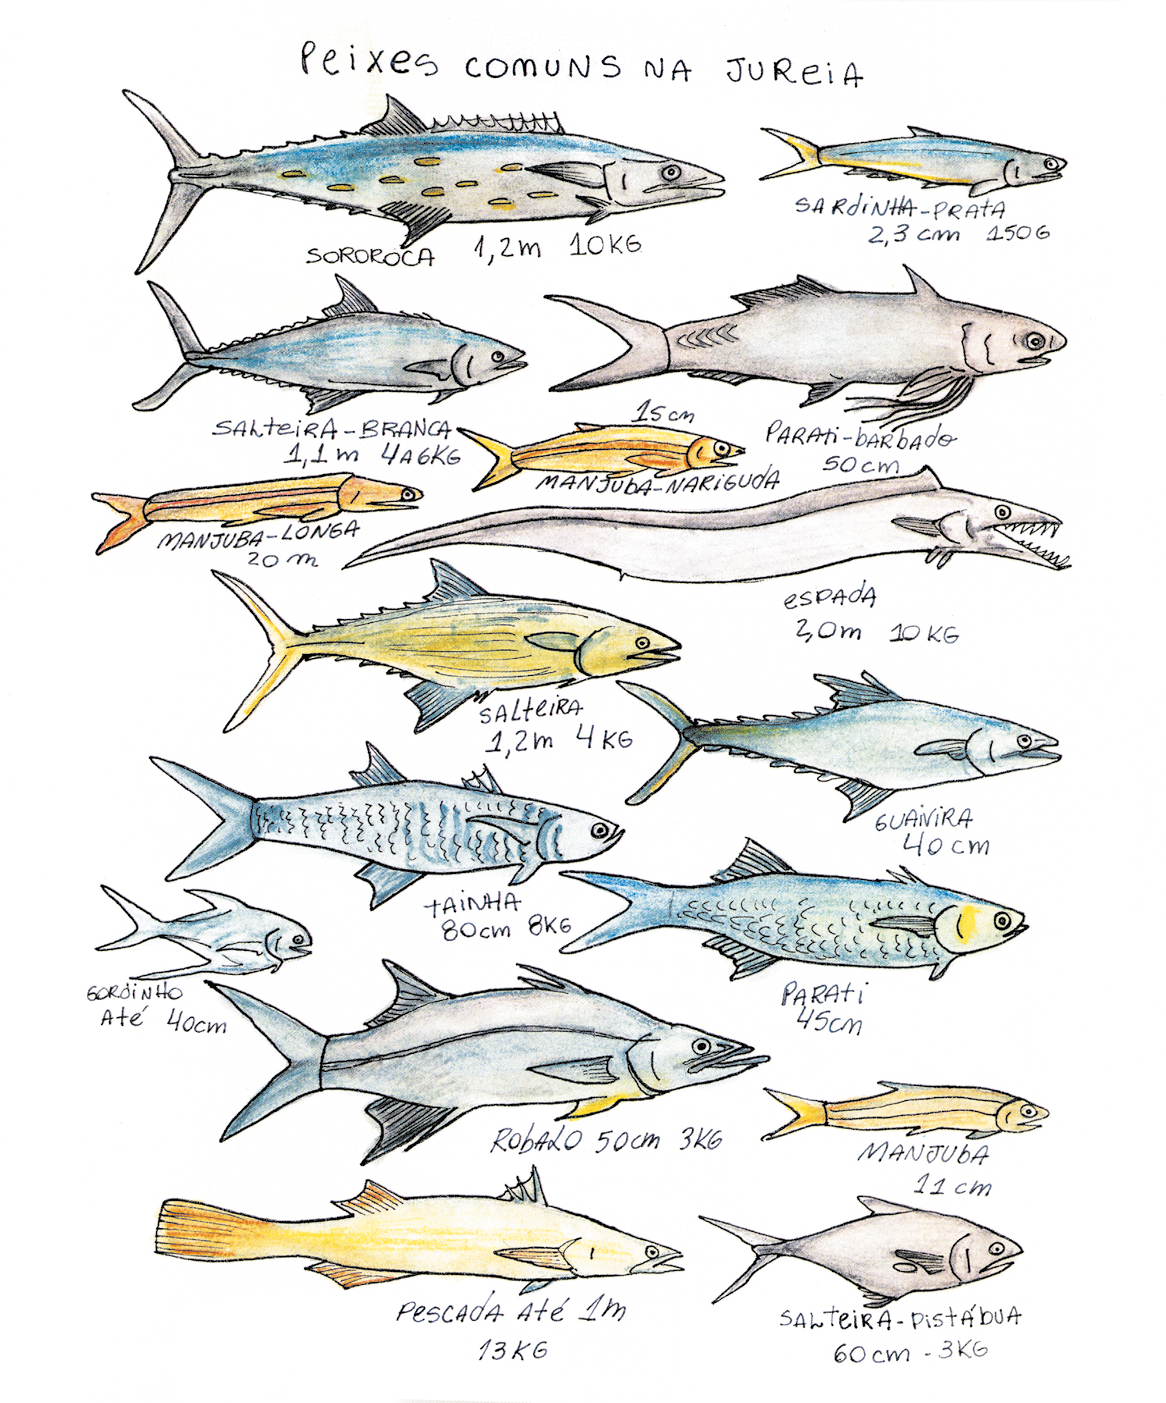 Ilustração. Na parte superior, título: Peixes comuns na Jureia. Na parte inferior, dezesseis peixes de tamanhos e formatos diferentes, em cores amarelo, azul e cinza, com nome, medida e peso de cada um.